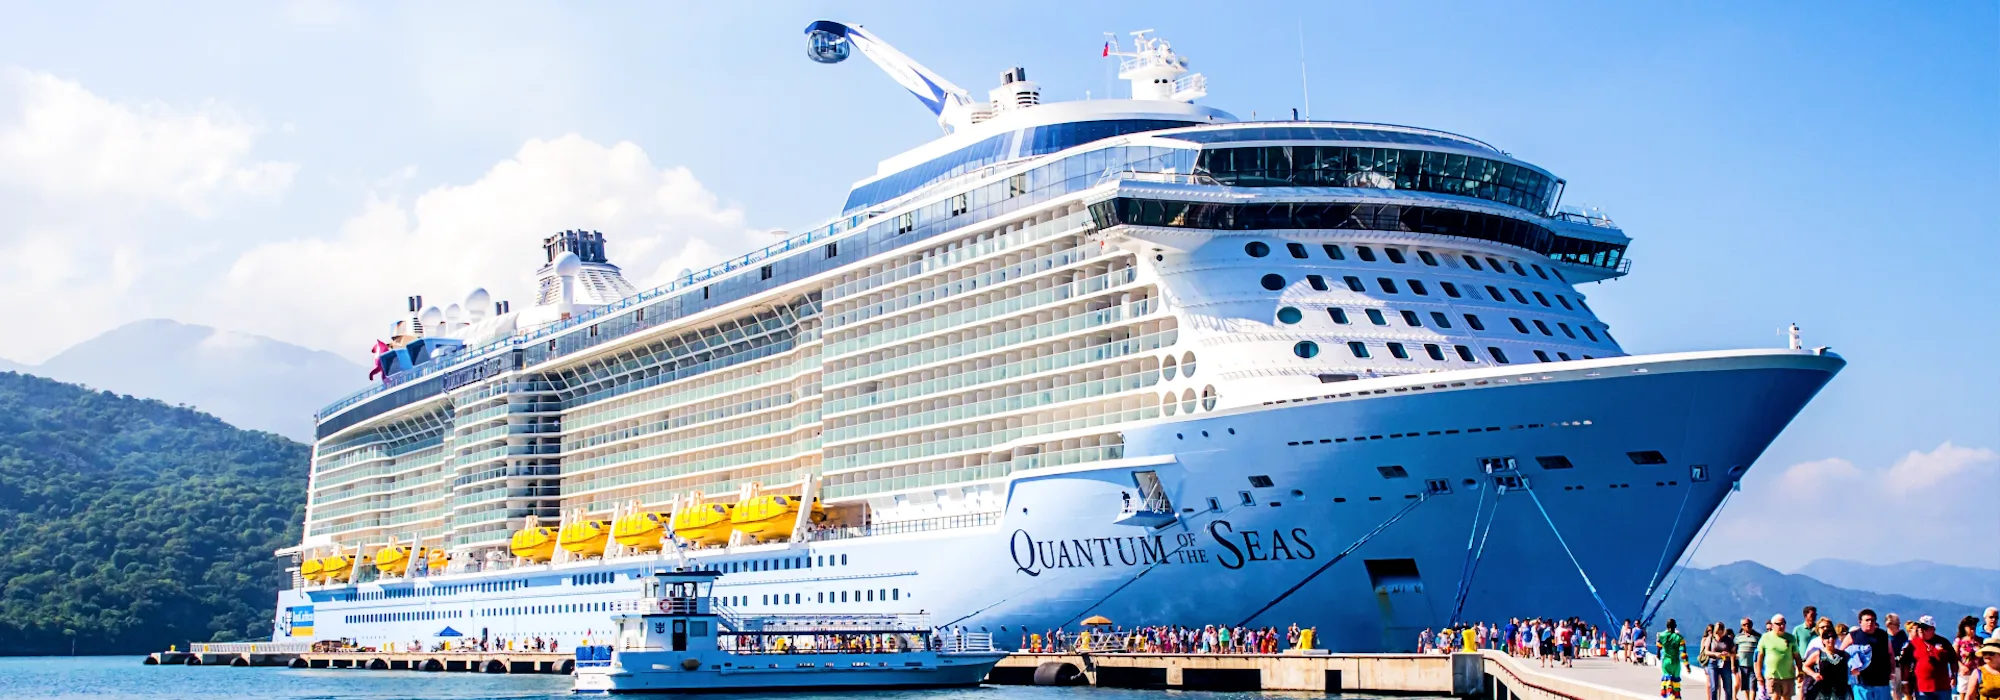 Quantum of the Seas - Royal Caribbean